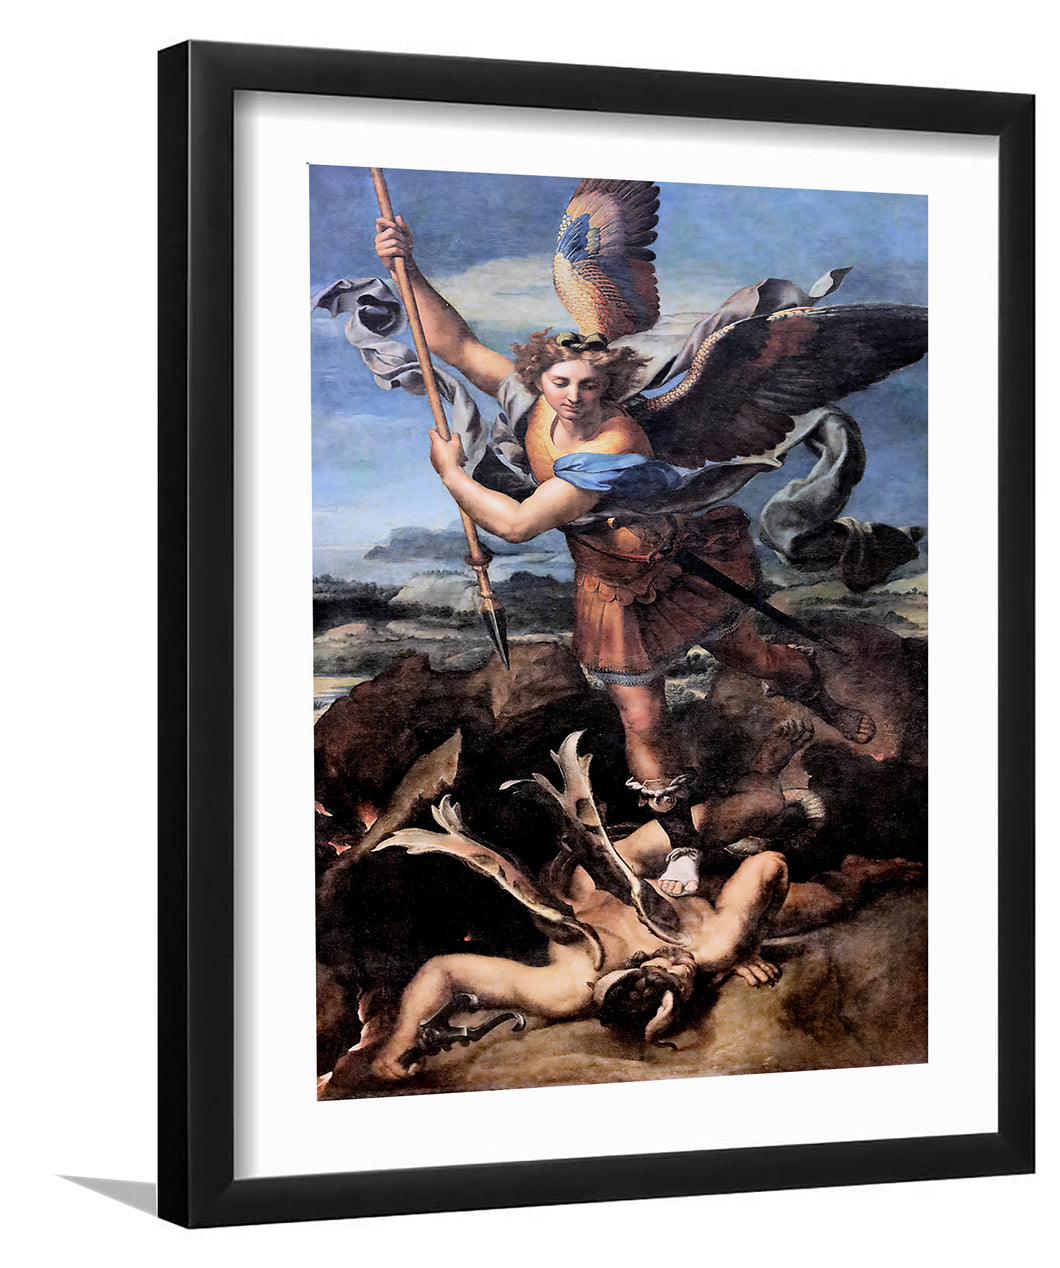 St.Michael kills the demon - Framed Prints, Painting Art, Art Print, Framed Art, Black Frame